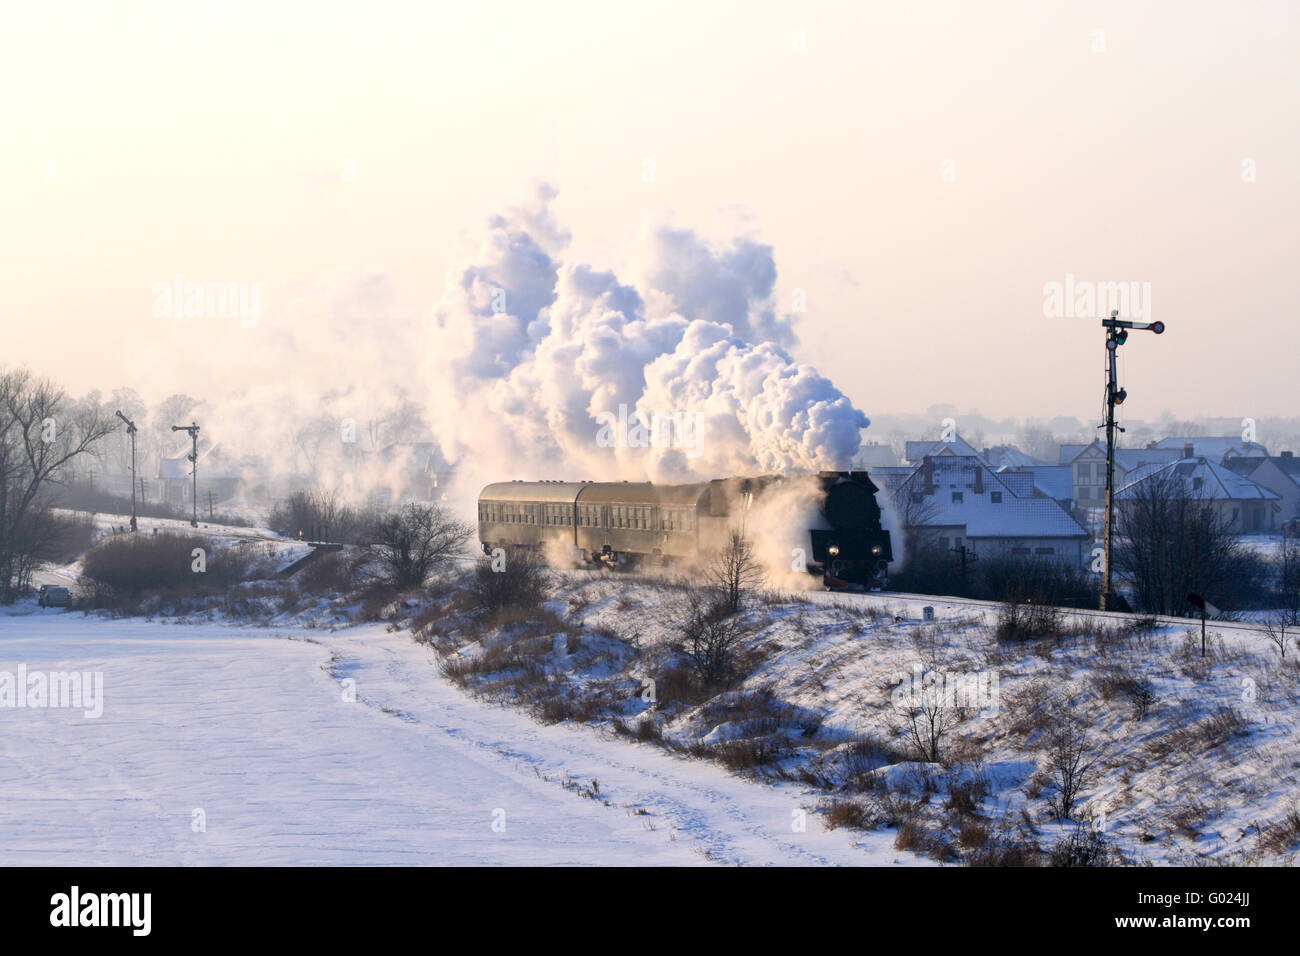 Vintage train à vapeur passant à travers la campagne enneigée Banque D'Images